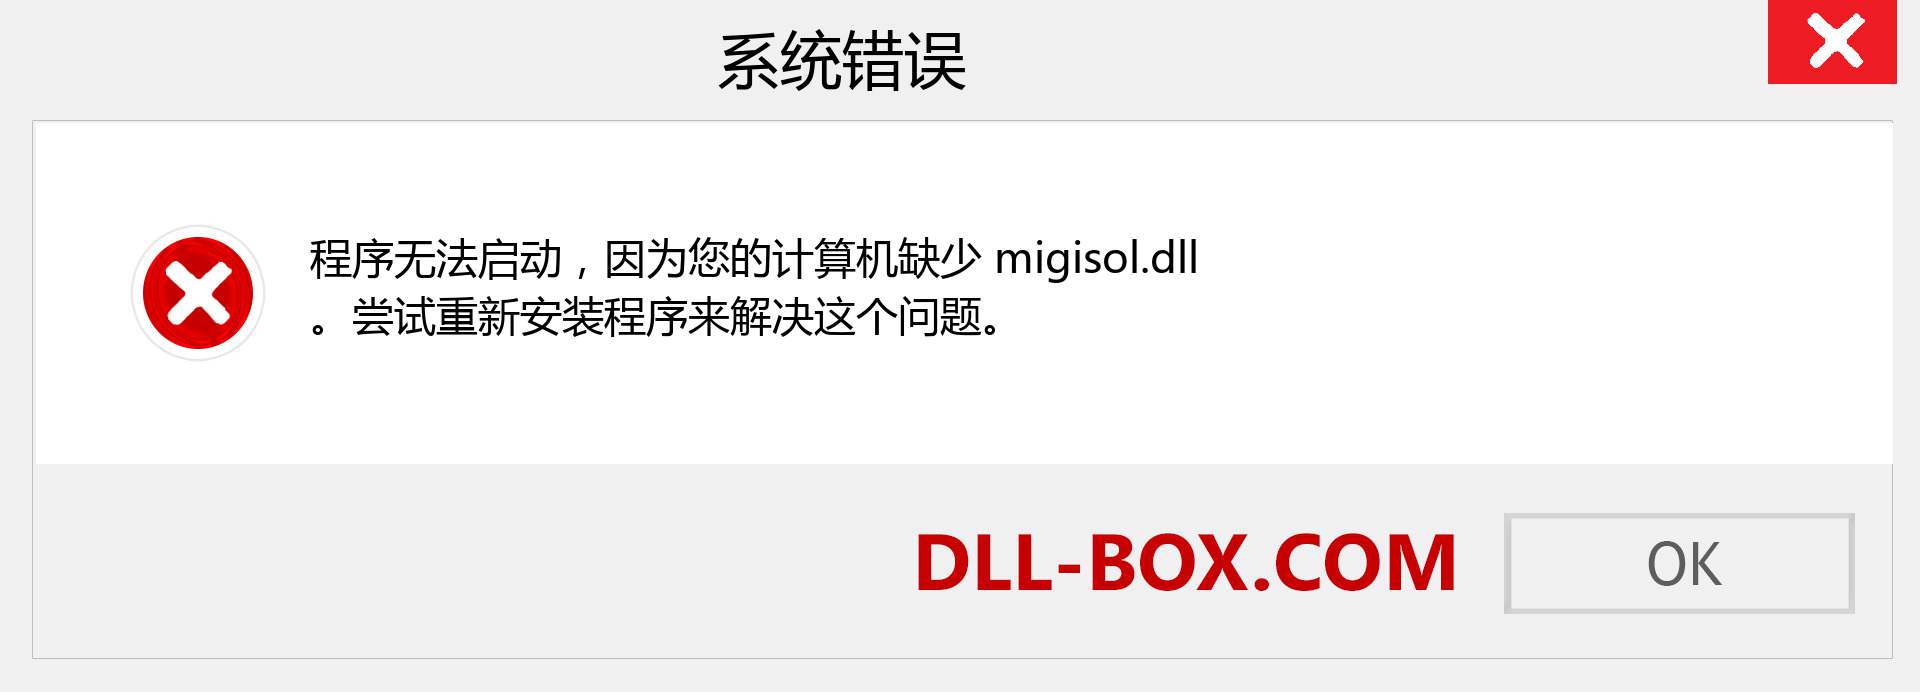 migisol.dll 文件丢失？。 适用于 Windows 7、8、10 的下载 - 修复 Windows、照片、图像上的 migisol dll 丢失错误